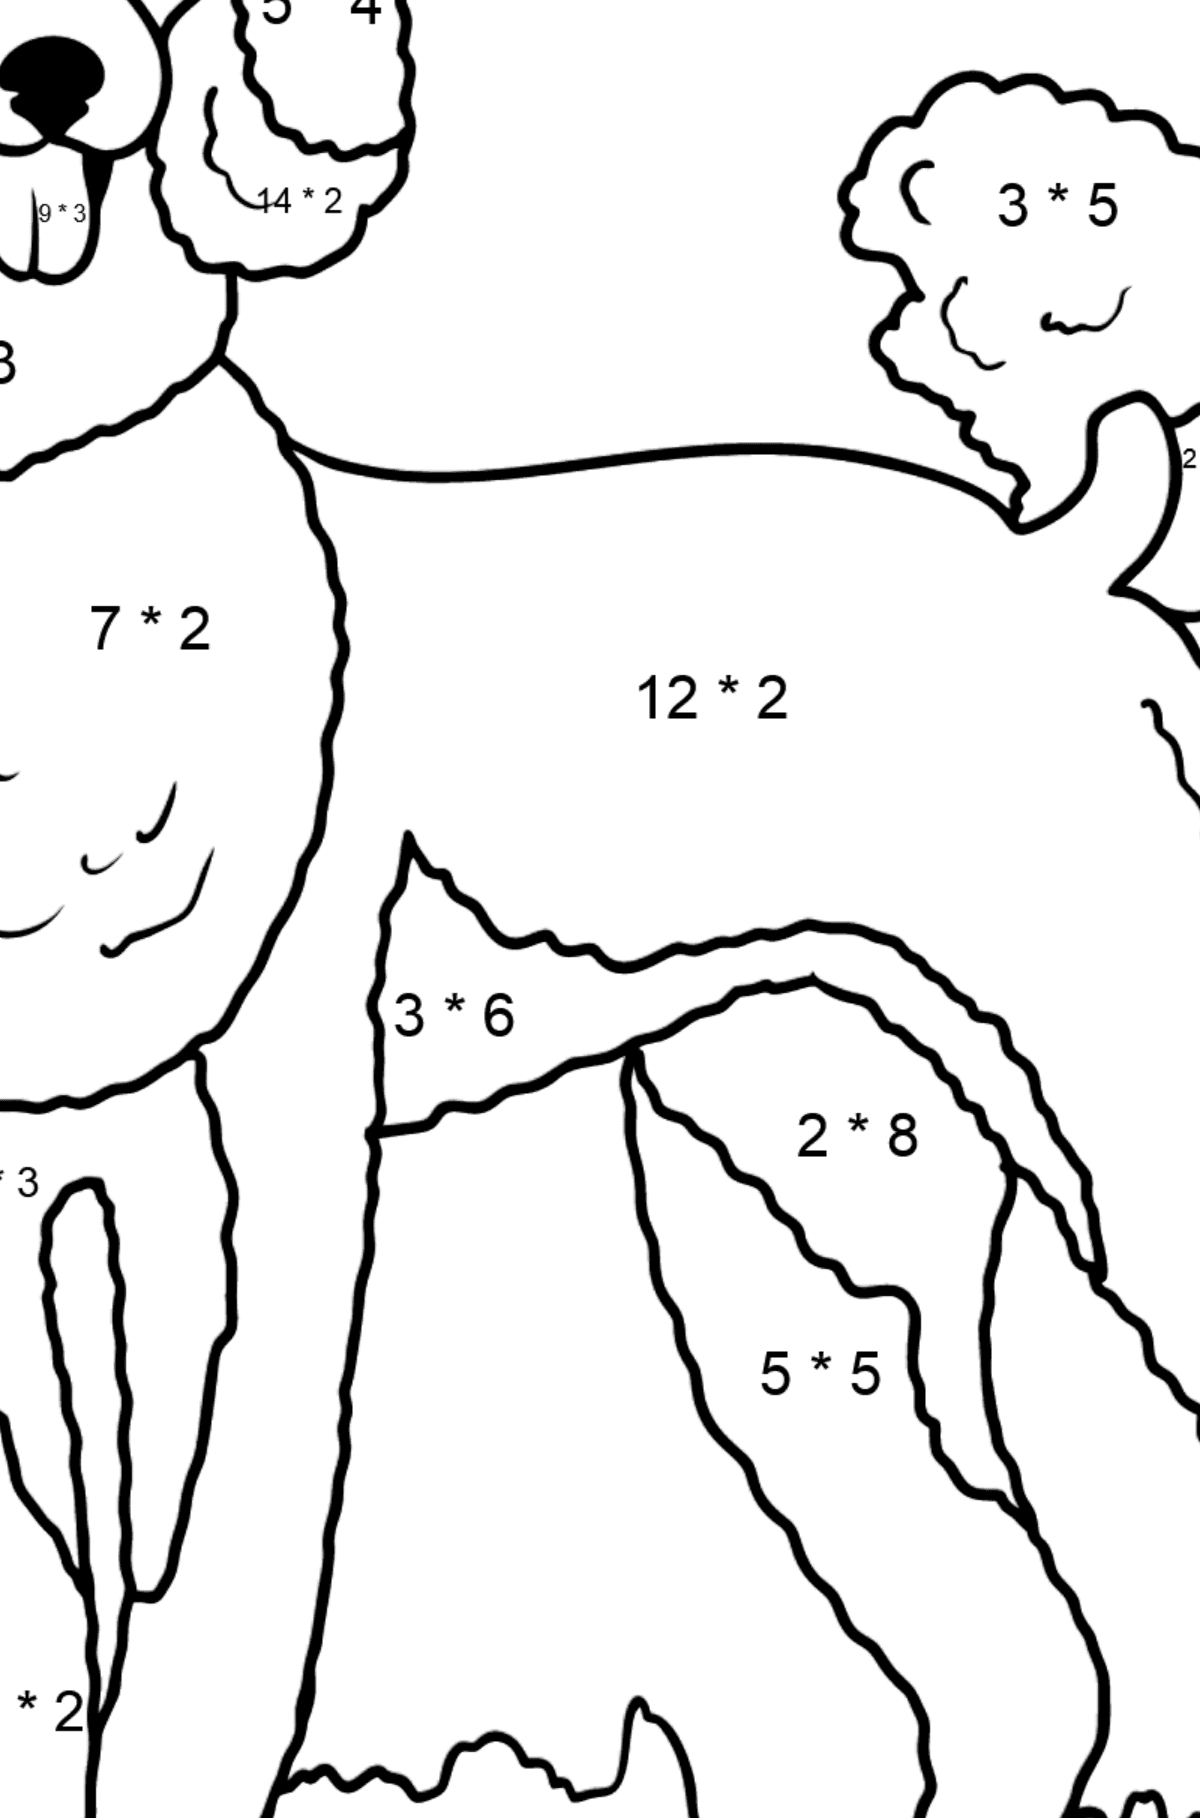 Desenho para colorir do poodle - Colorindo com Matemática - Multiplicação para Crianças